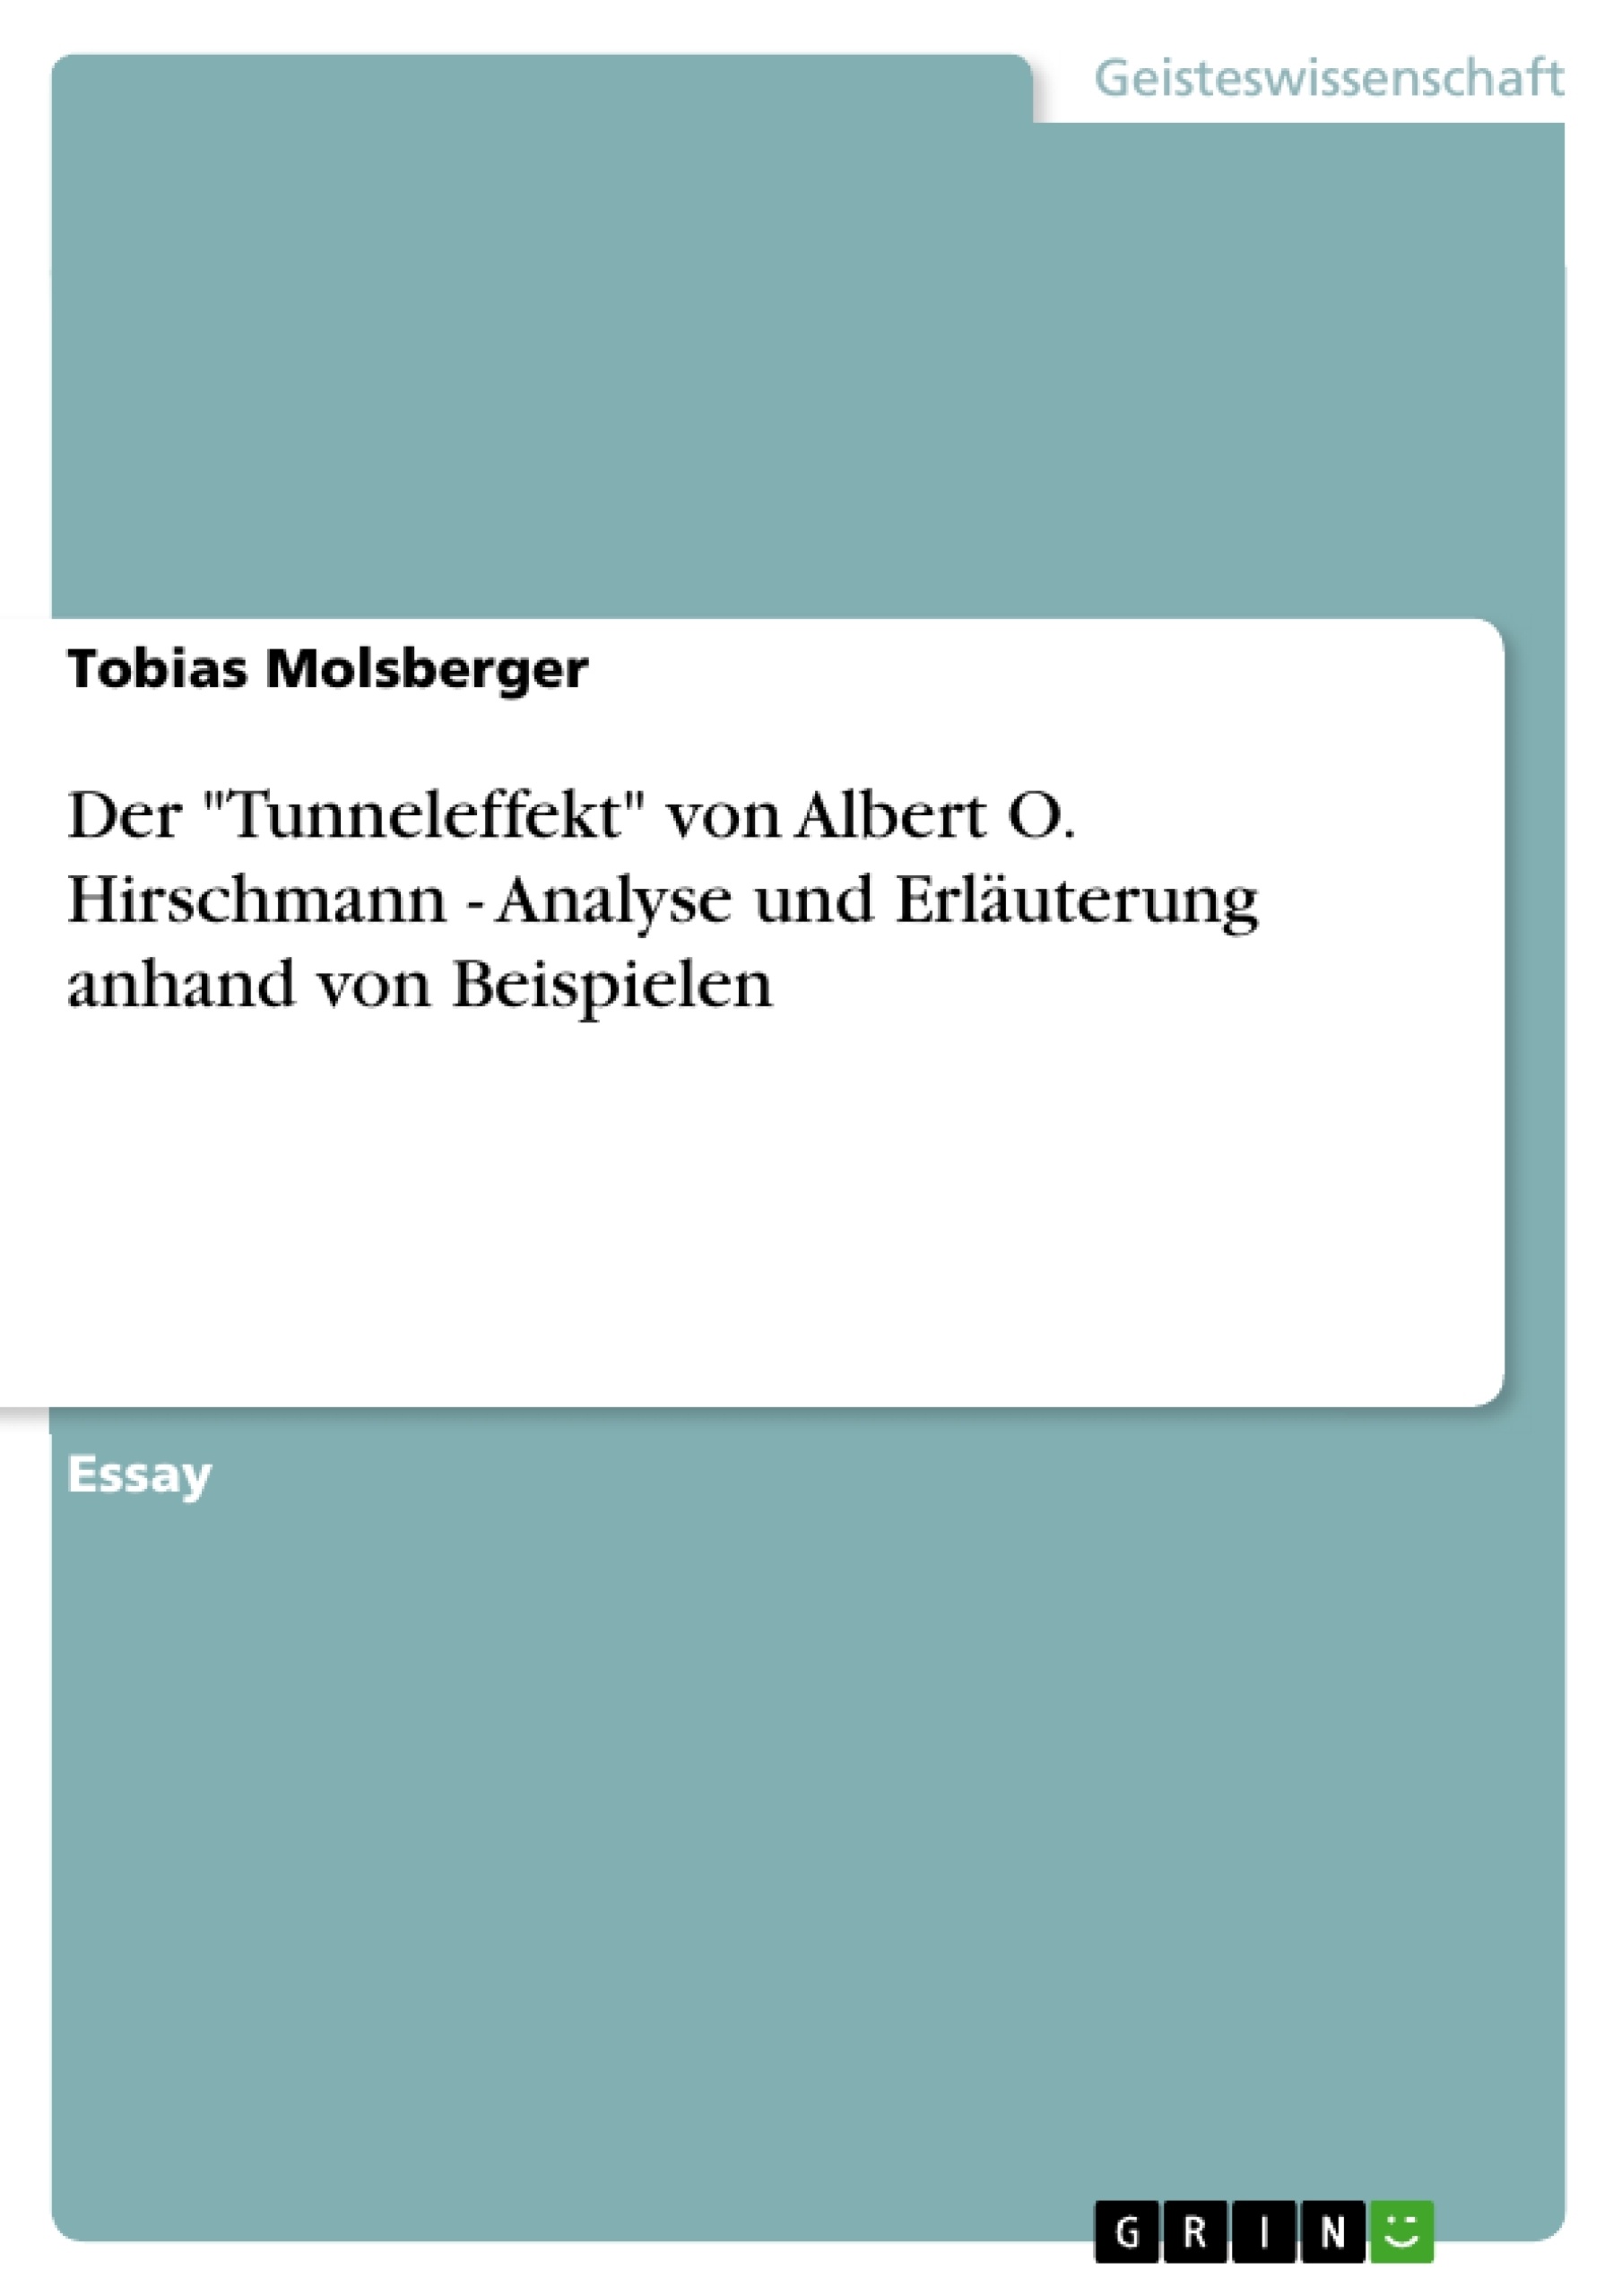 Title: Der "Tunneleffekt" von Albert O. Hirschmann - Analyse und Erläuterung anhand von Beispielen